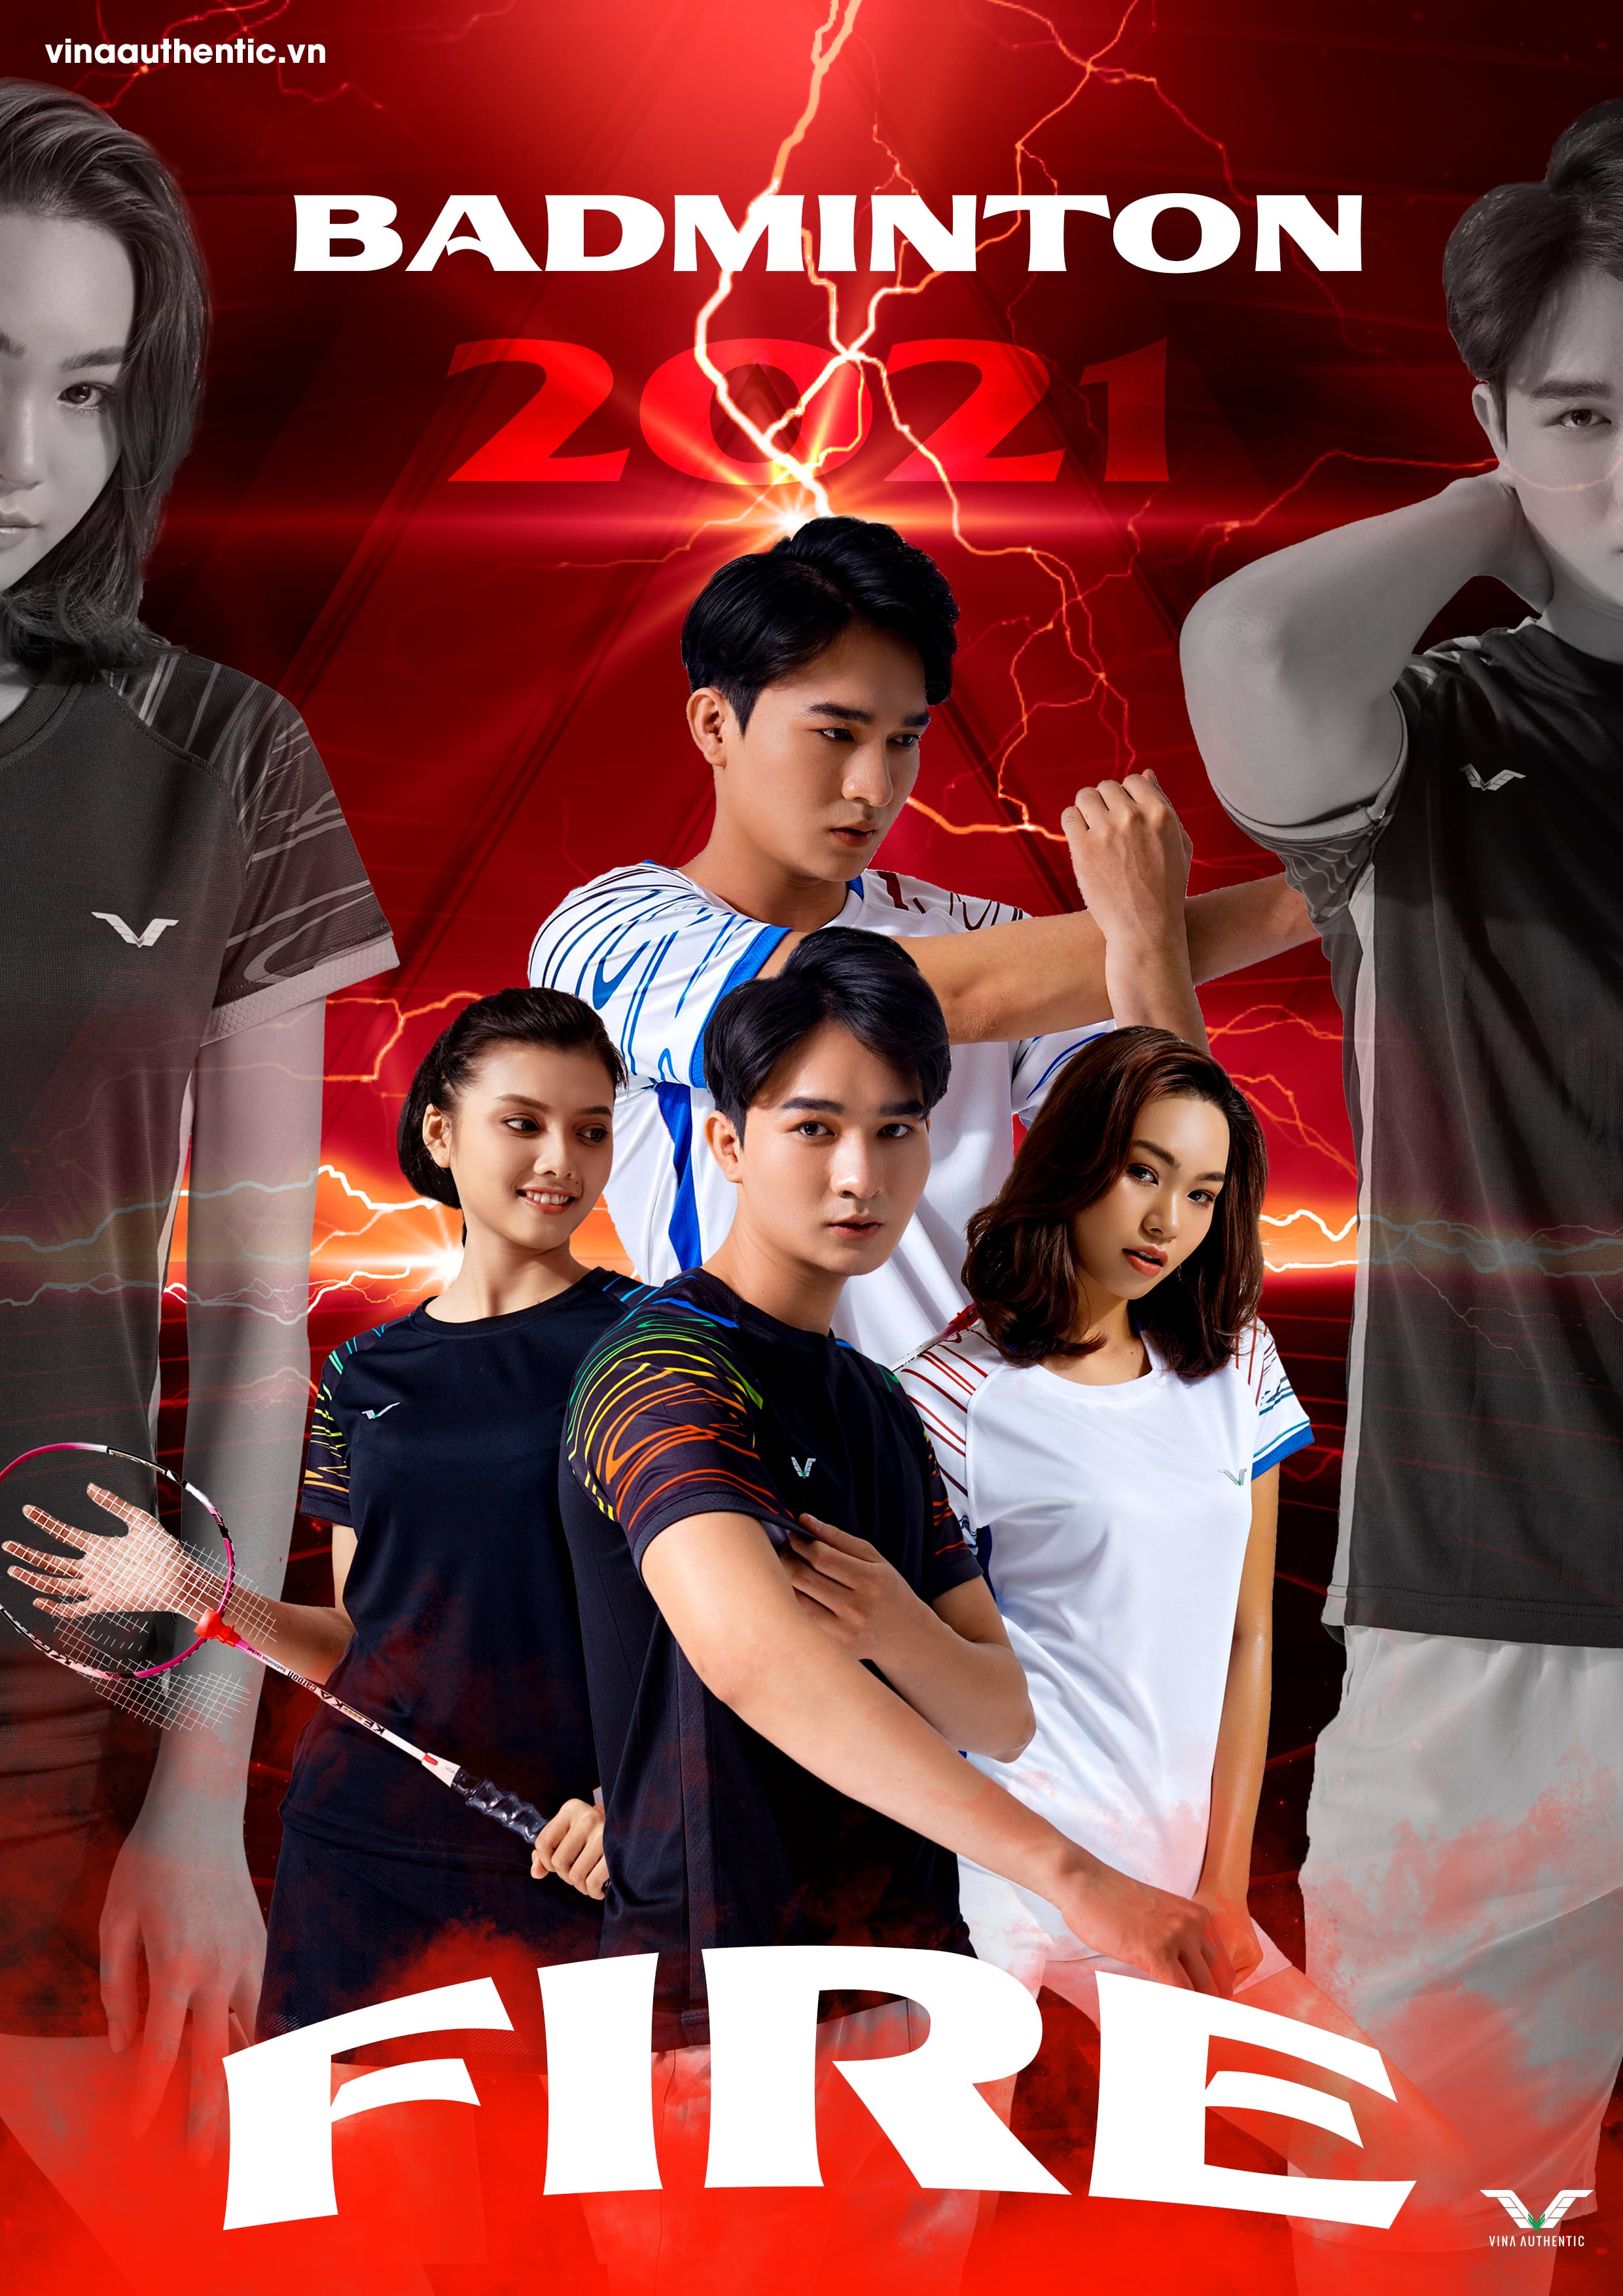 [MUA 1 TẶNG 1] Set bộ thể thao cầu lông nữ badminton NEW02, cao cấp, chất lượng, chuẩn form